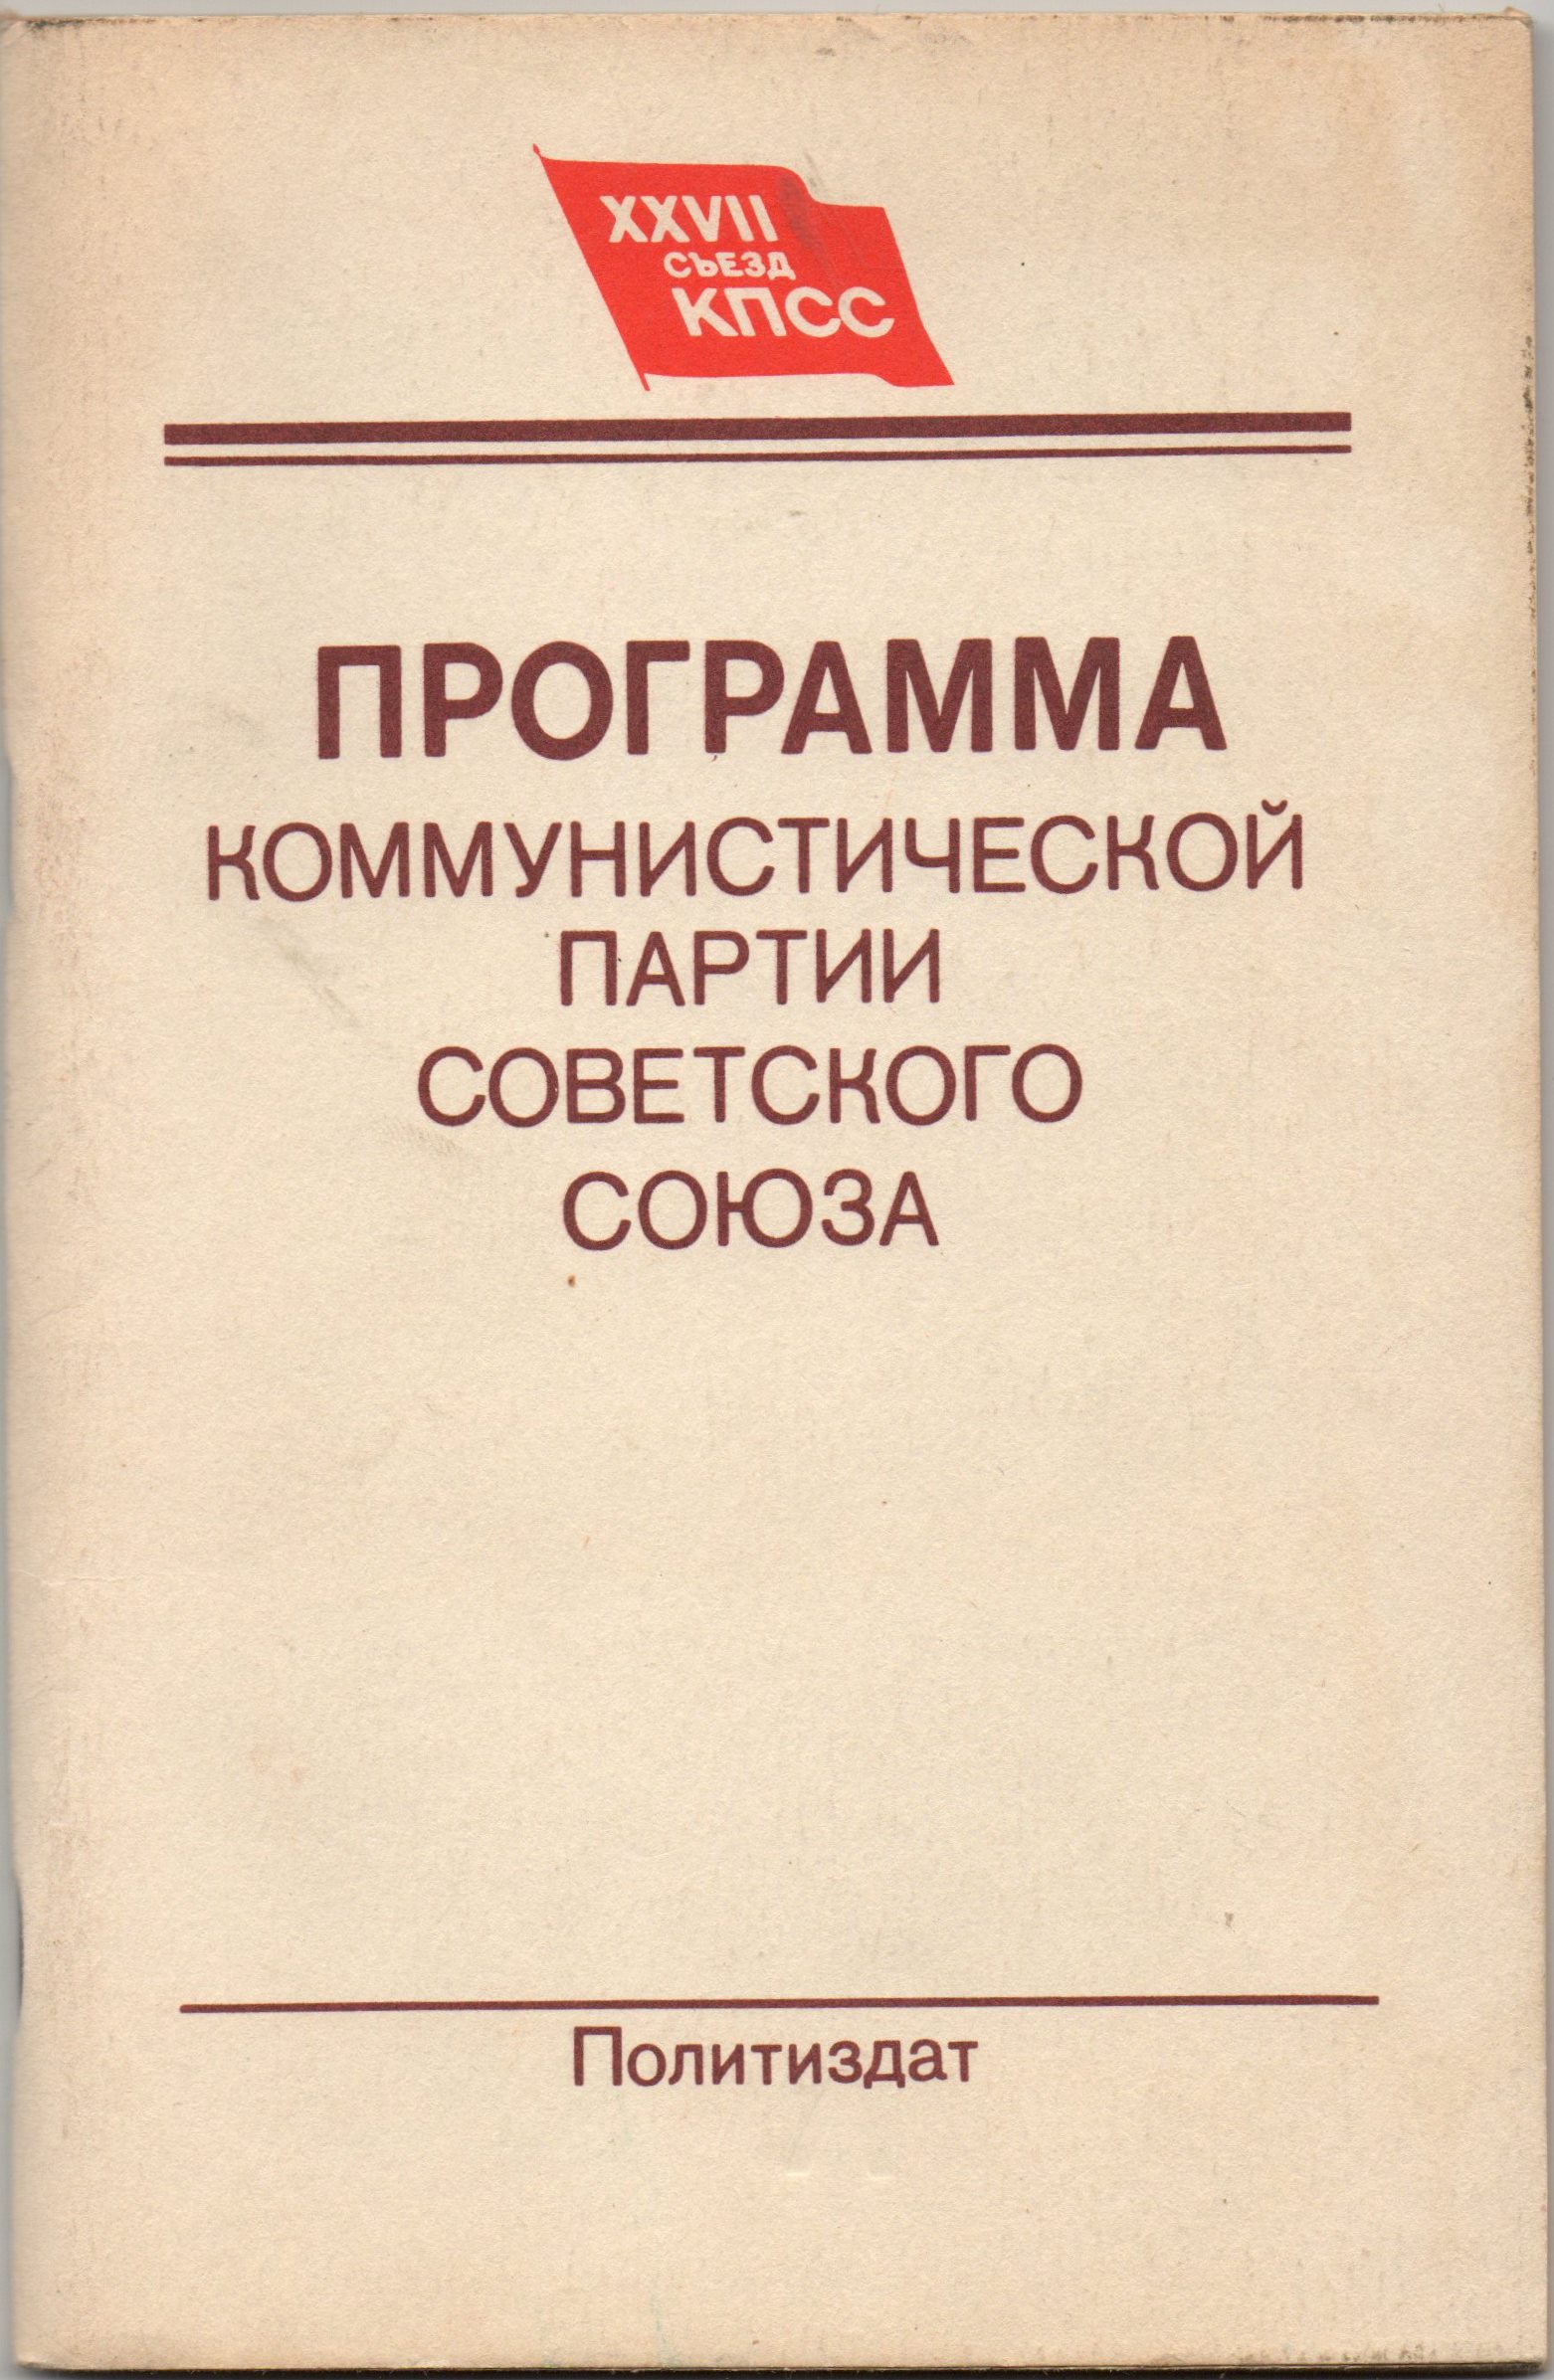 Книга "Программа Коммунистической партии Советского Союза"